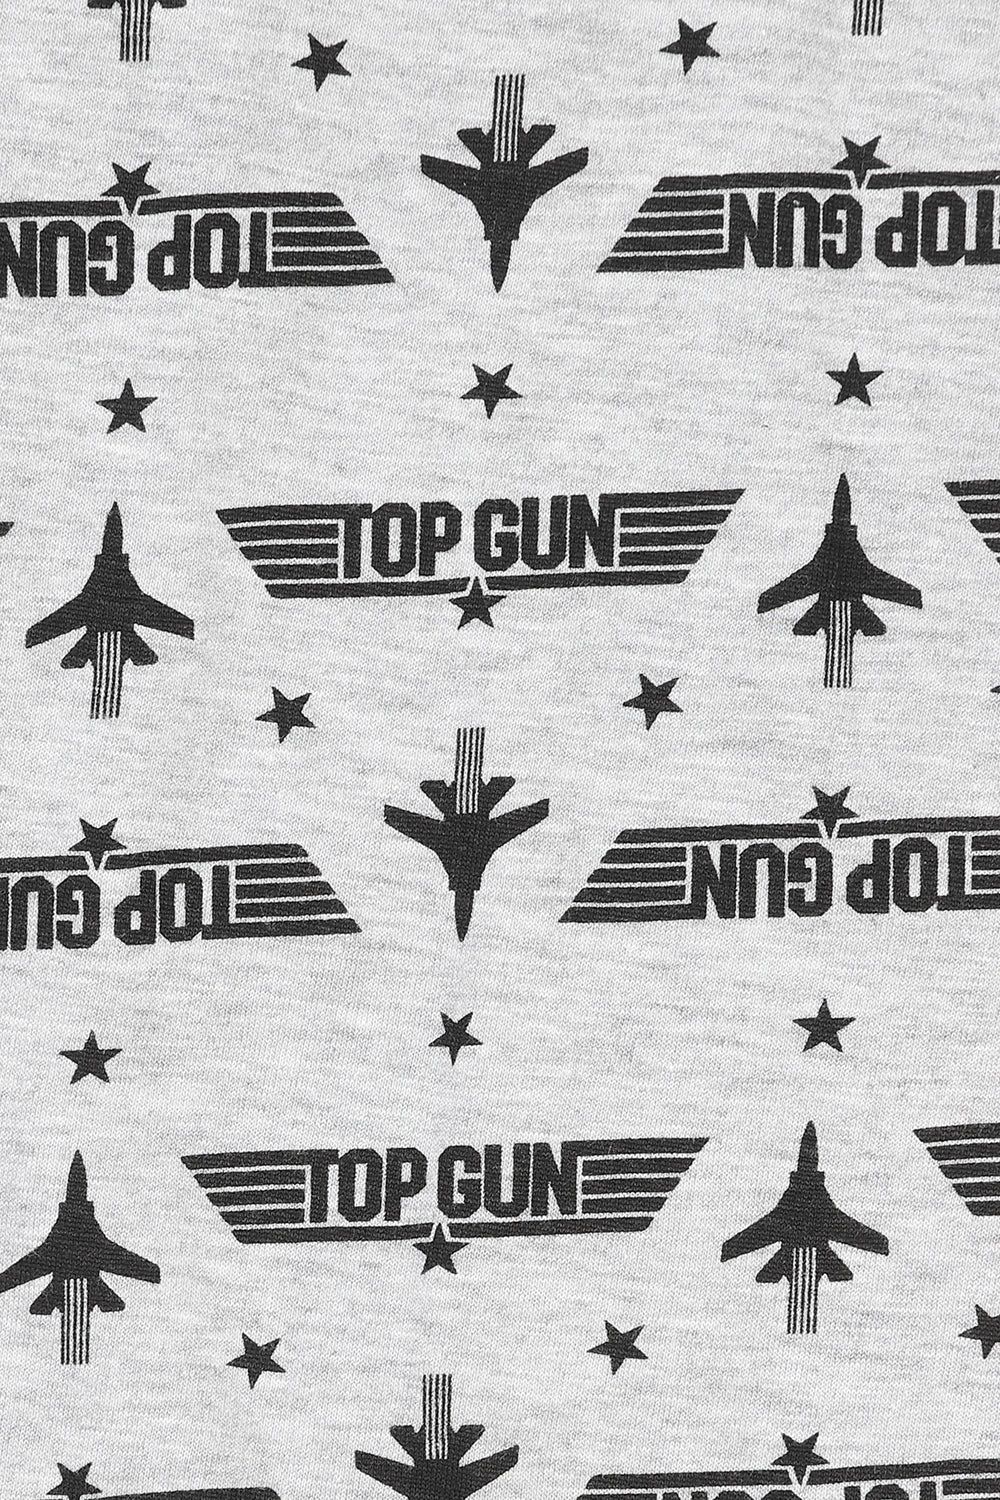 Mens Top Gun Long Pyjamas - Pyjamas.com